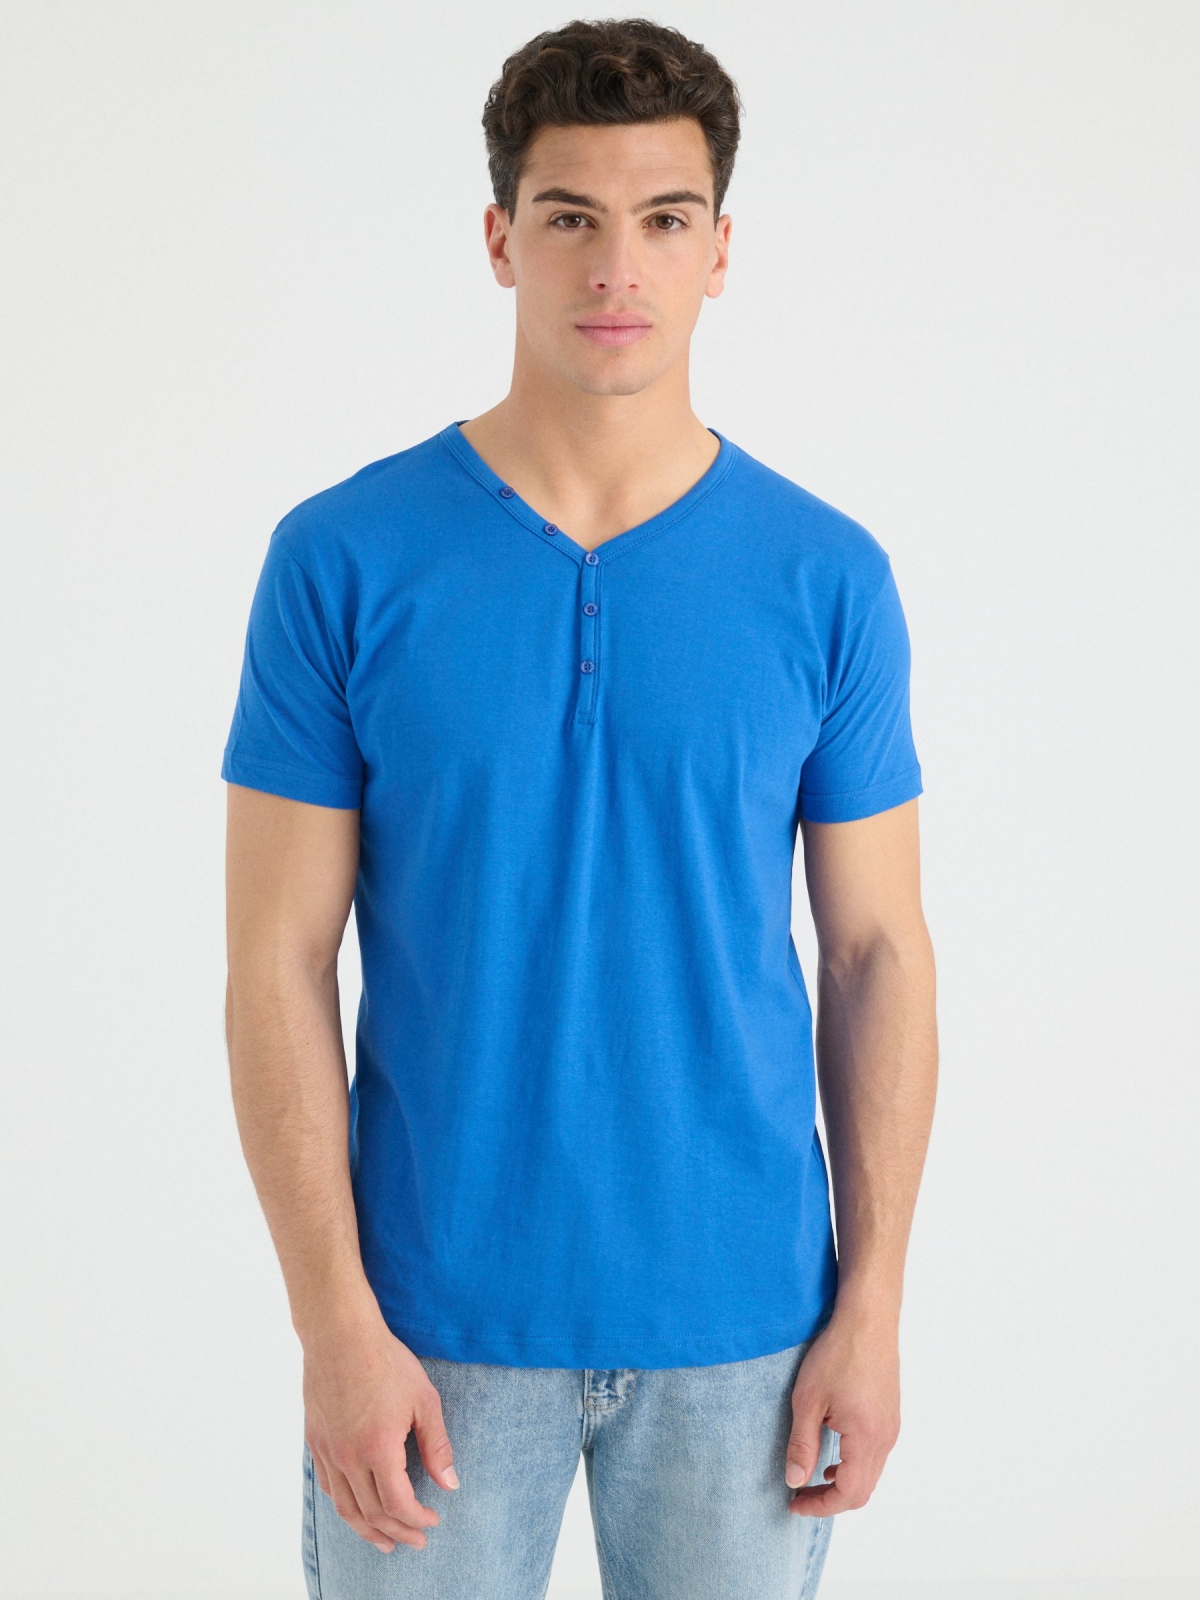 Camiseta cuello con botones azul vista media frontal